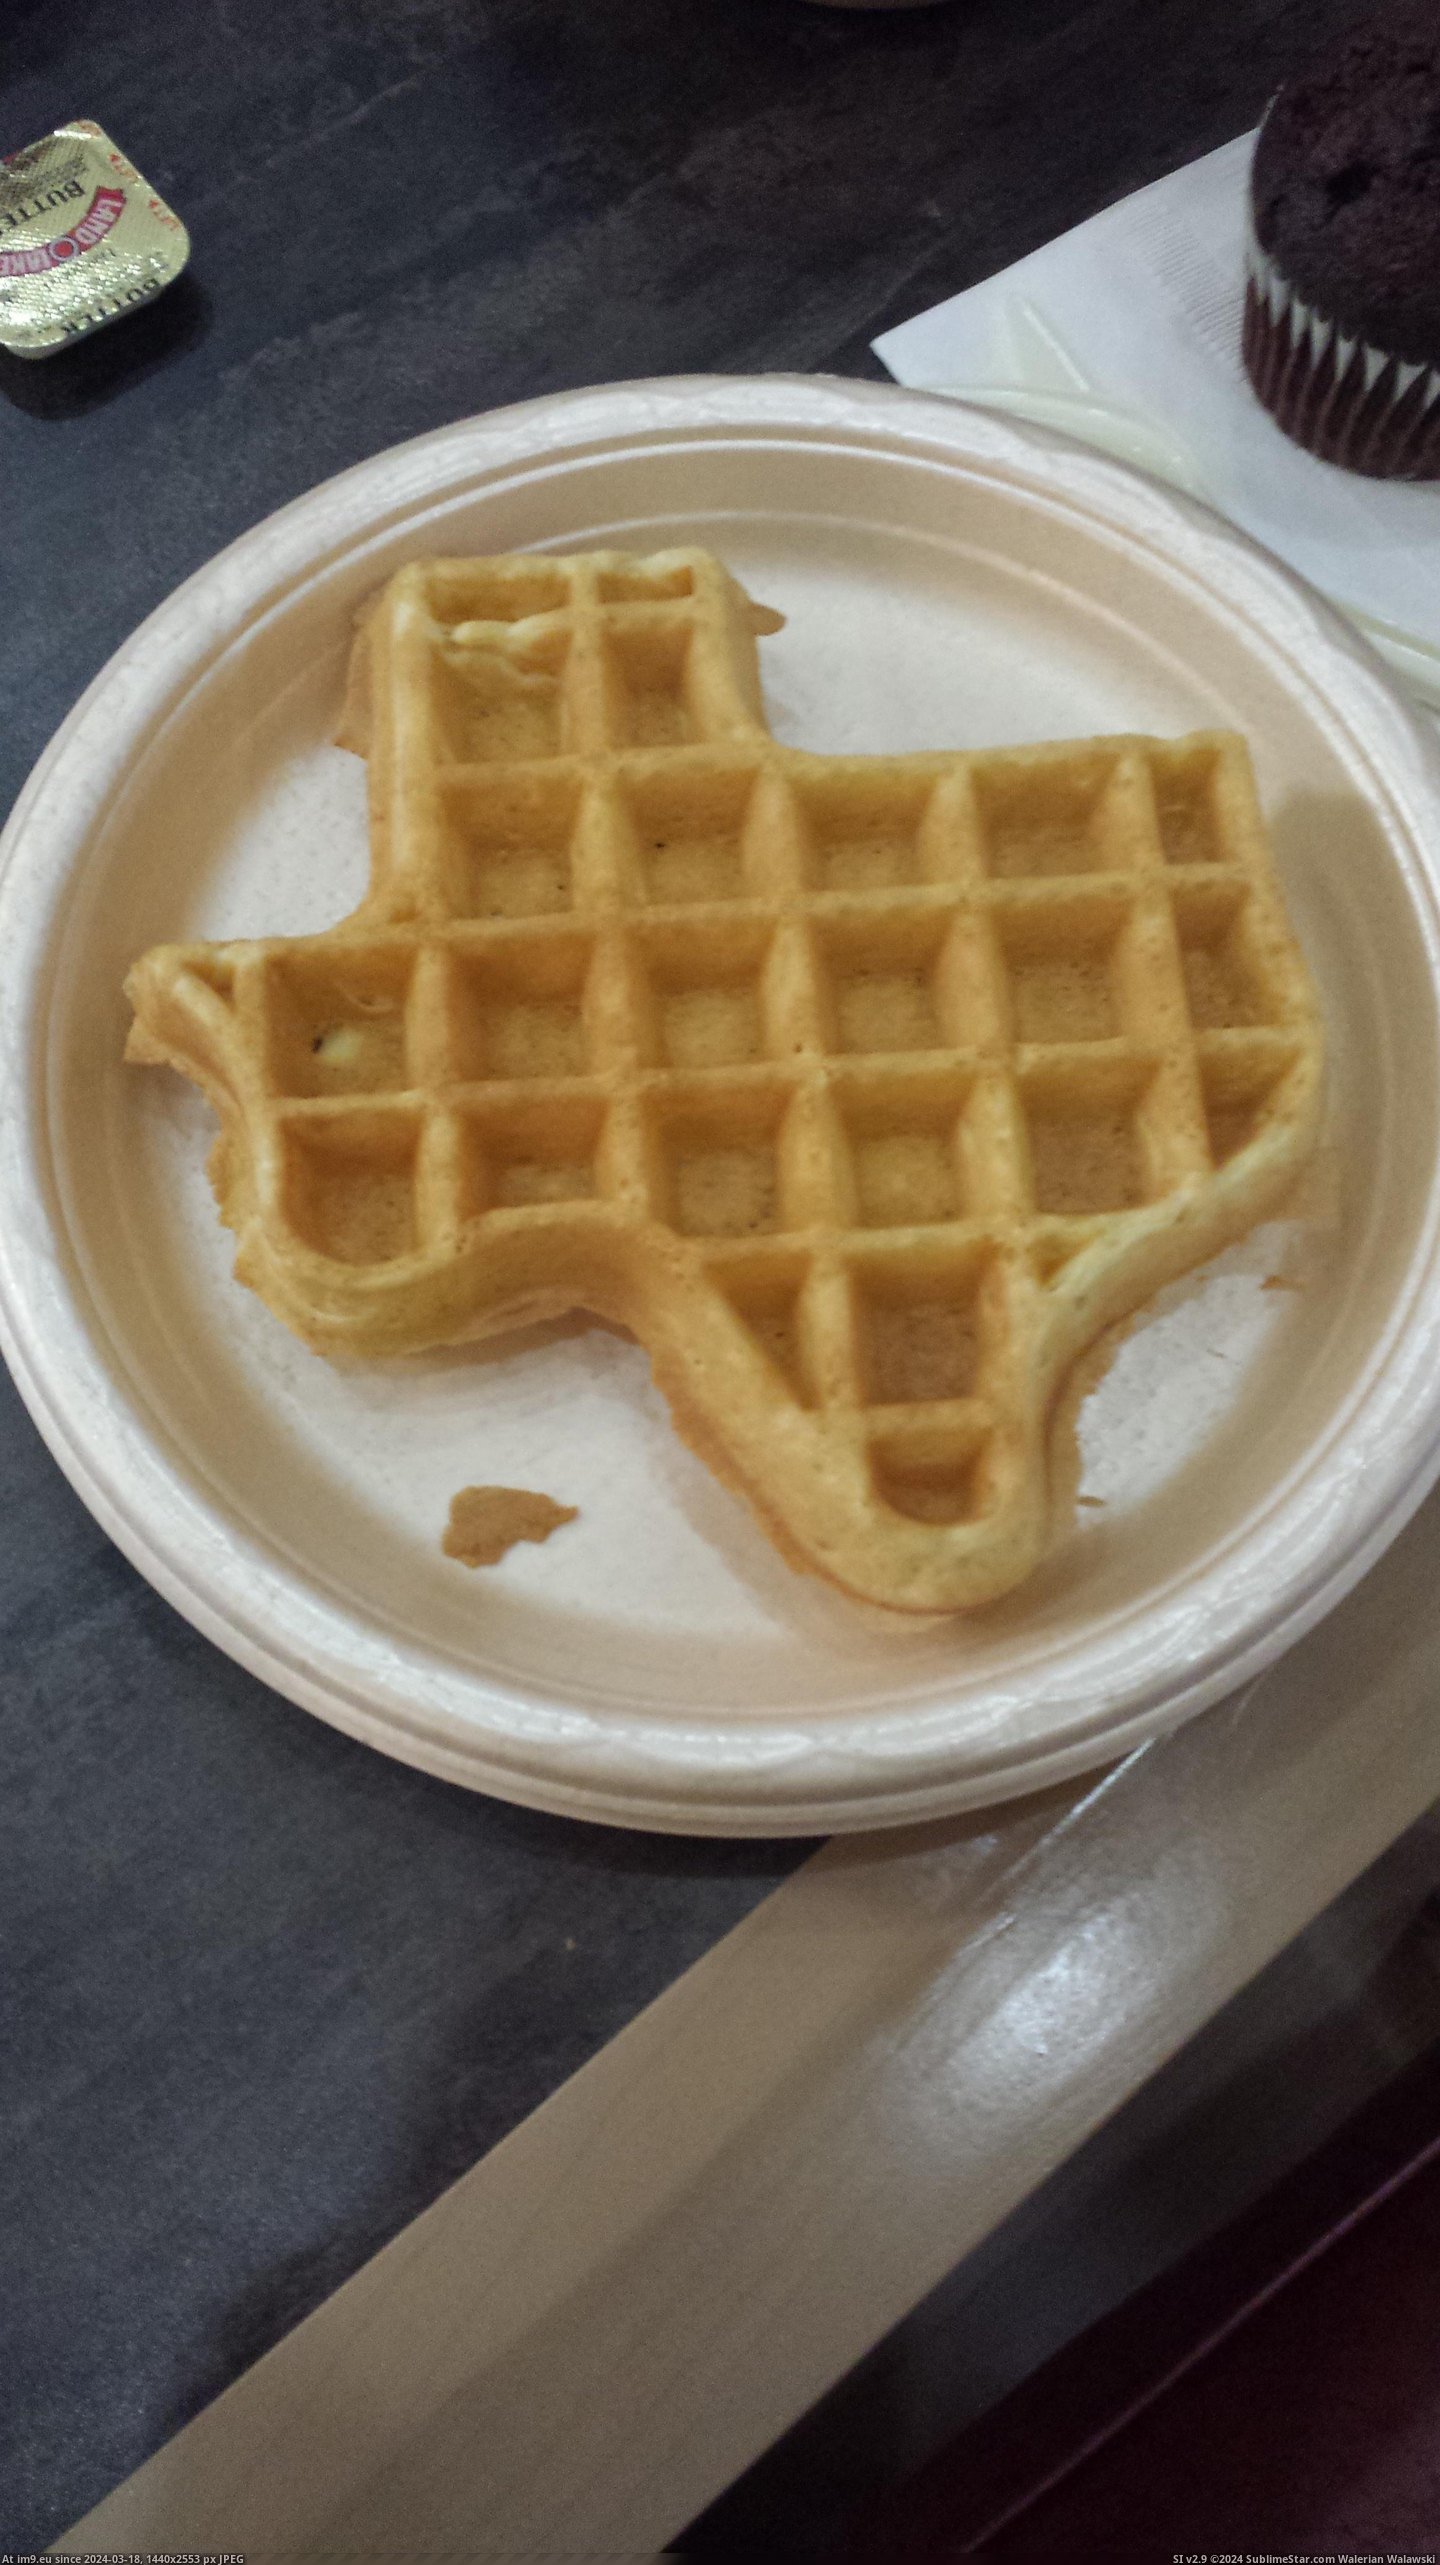 #Hotel #Texas #Staying #Kansas #Serves #Shaped #Waffles [Mildlyinteresting] The hotel I'm staying at in Kansas serves waffles shaped like Texas Pic. (Изображение из альбом My r/MILDLYINTERESTING favs))